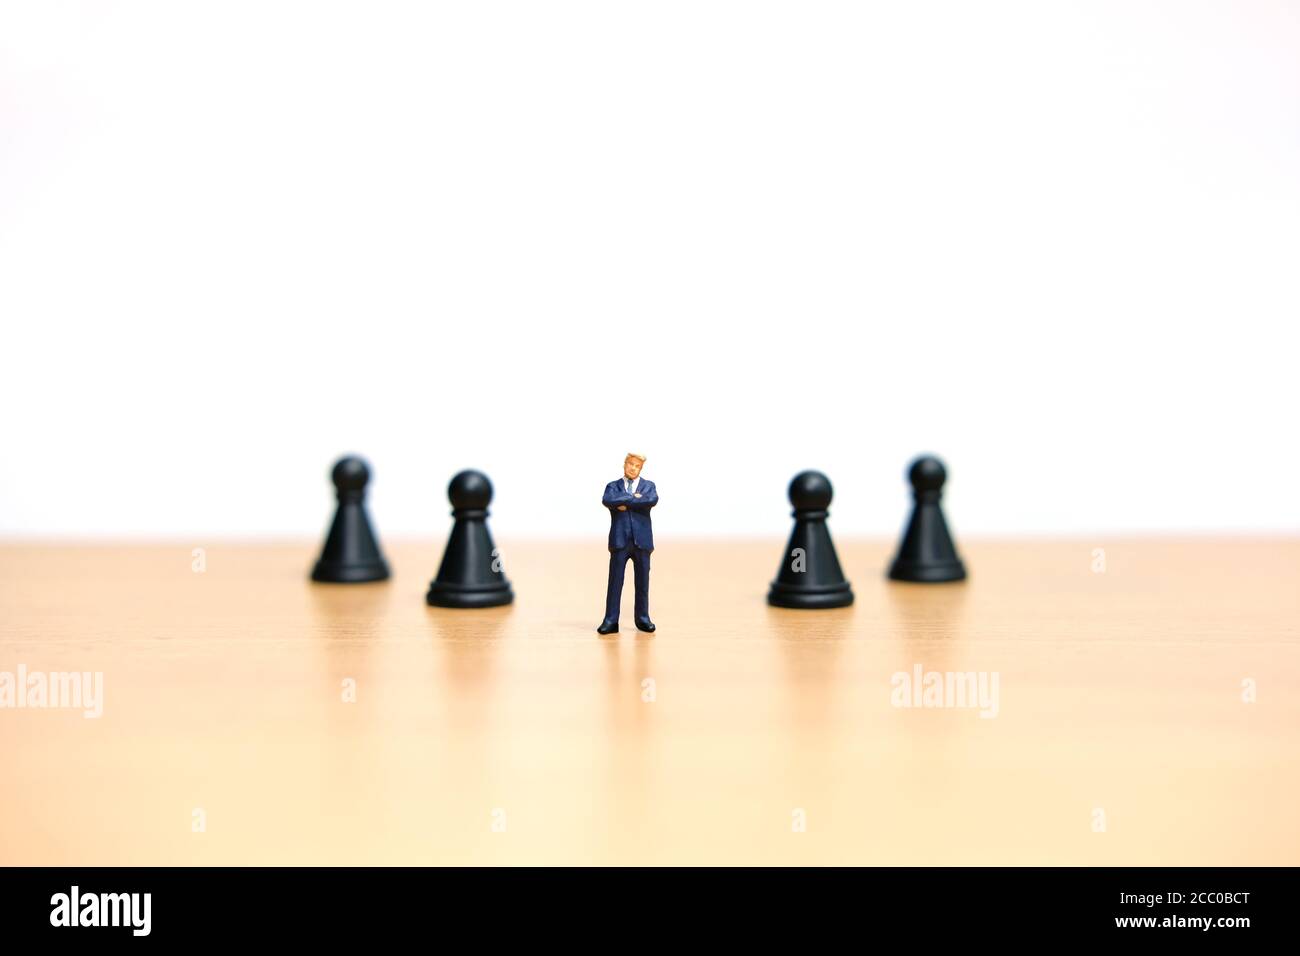 Business-Strategie konzeptuelles Foto - Miniatur des Geschäftsmannes stehend in Die Mitte auf dem Schachbrett am hölzernen Tisch Stockfoto